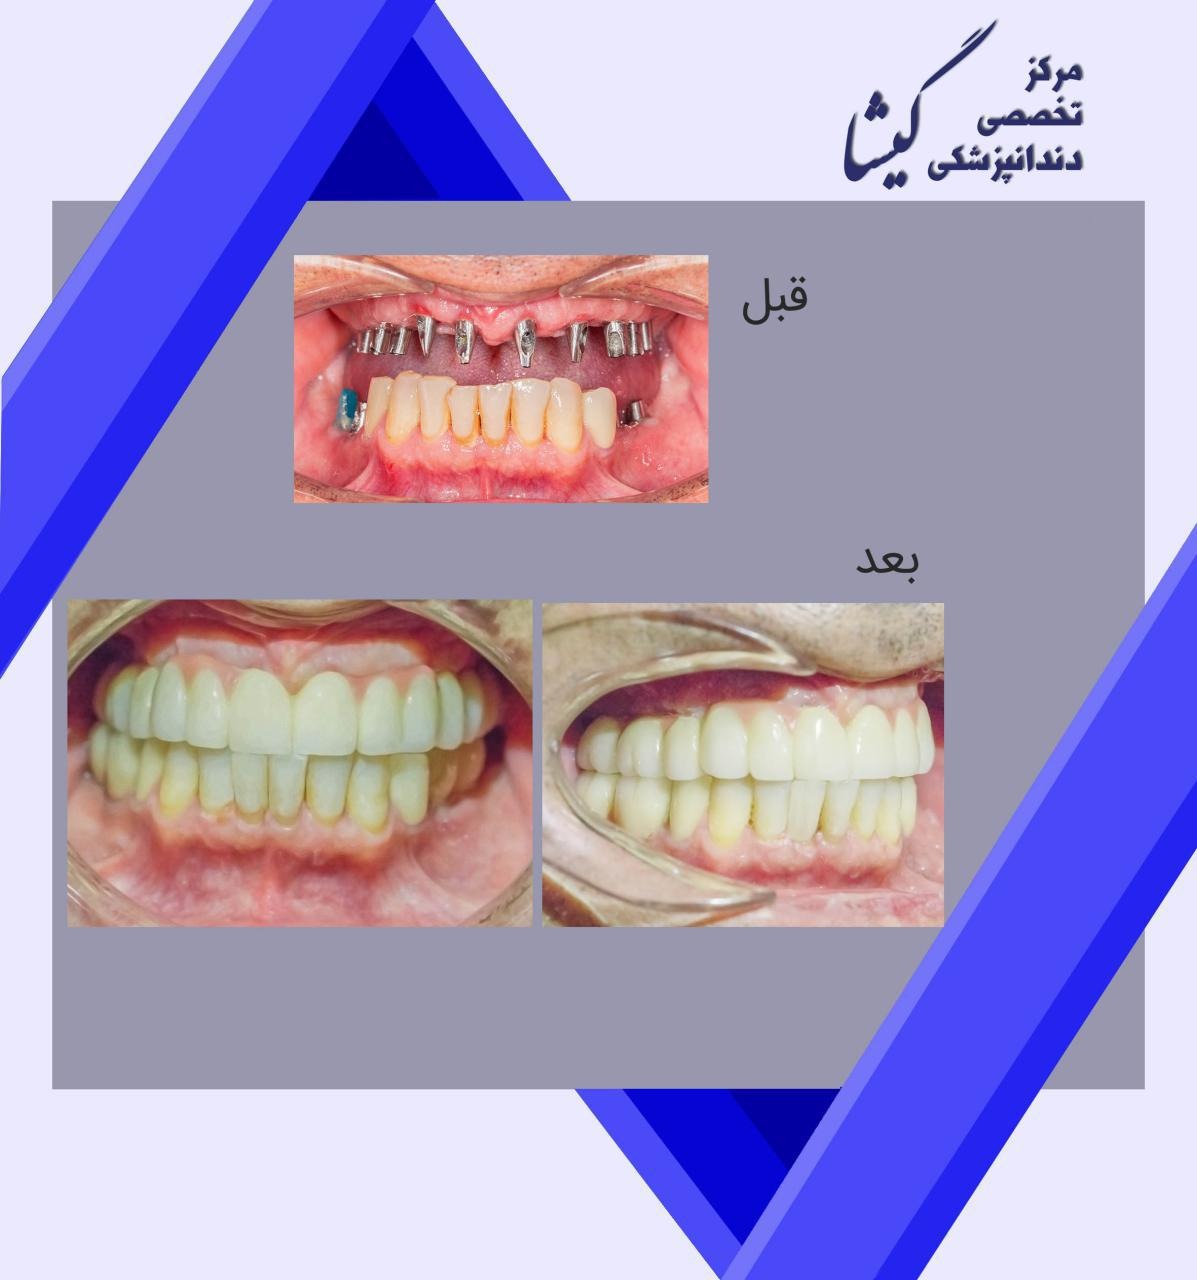 بازسازی دندانهای فک بالا و پایین با ایمپلنت توسط متخصص ایمپلنت